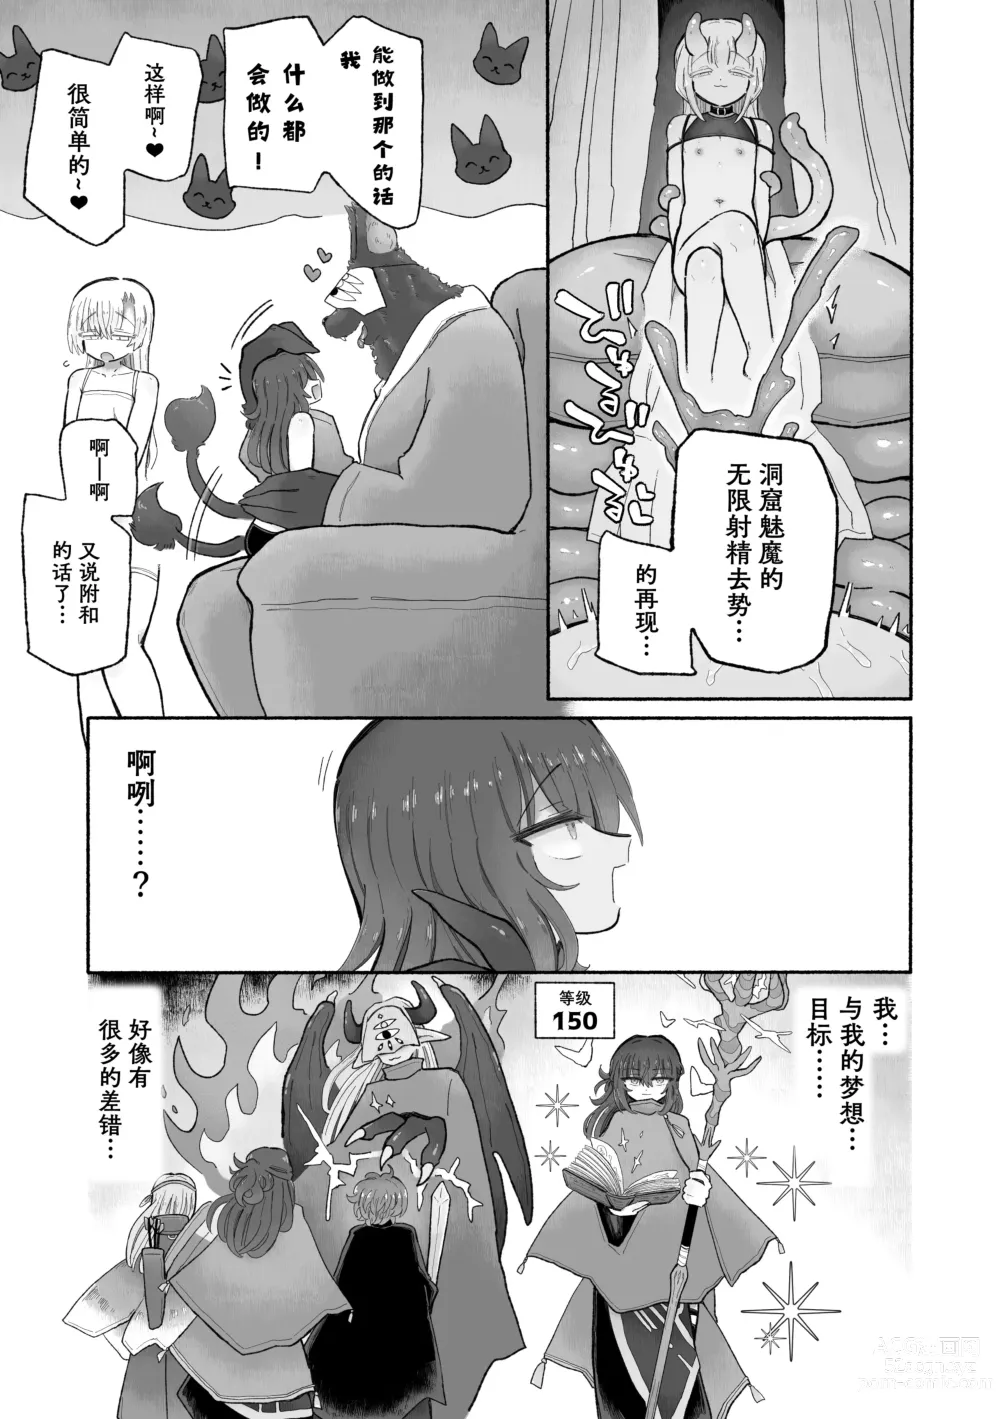 Page 52 of doujinshi Do hamari chui no kyosei danjon! 〜Mugen shasei no kairaku jigoku e yokoso〜